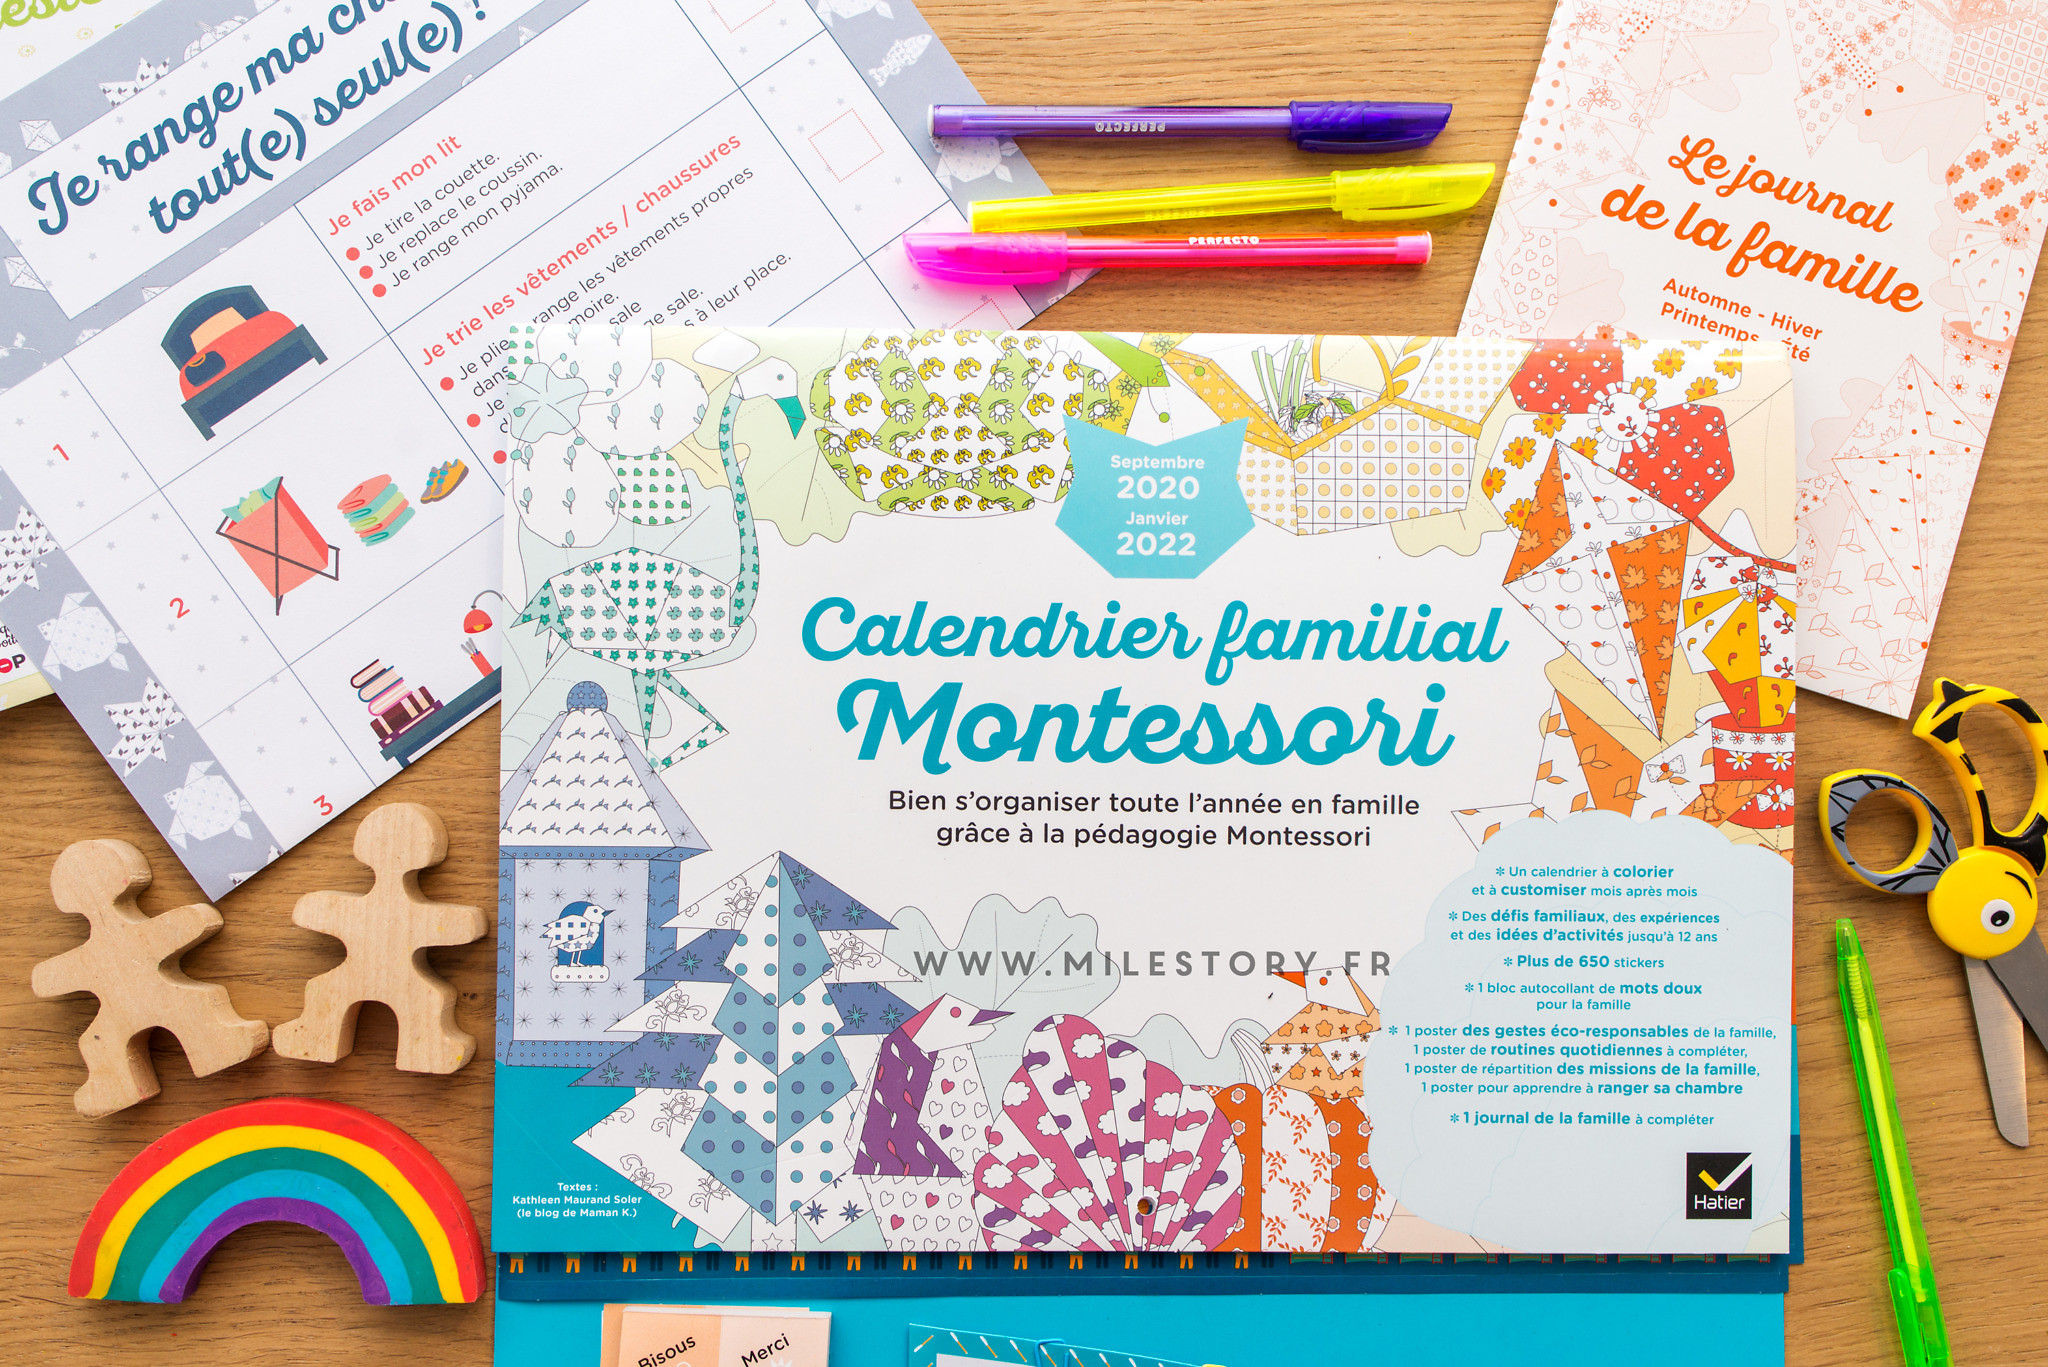 Calendrier familial Montessori 2020-2022 